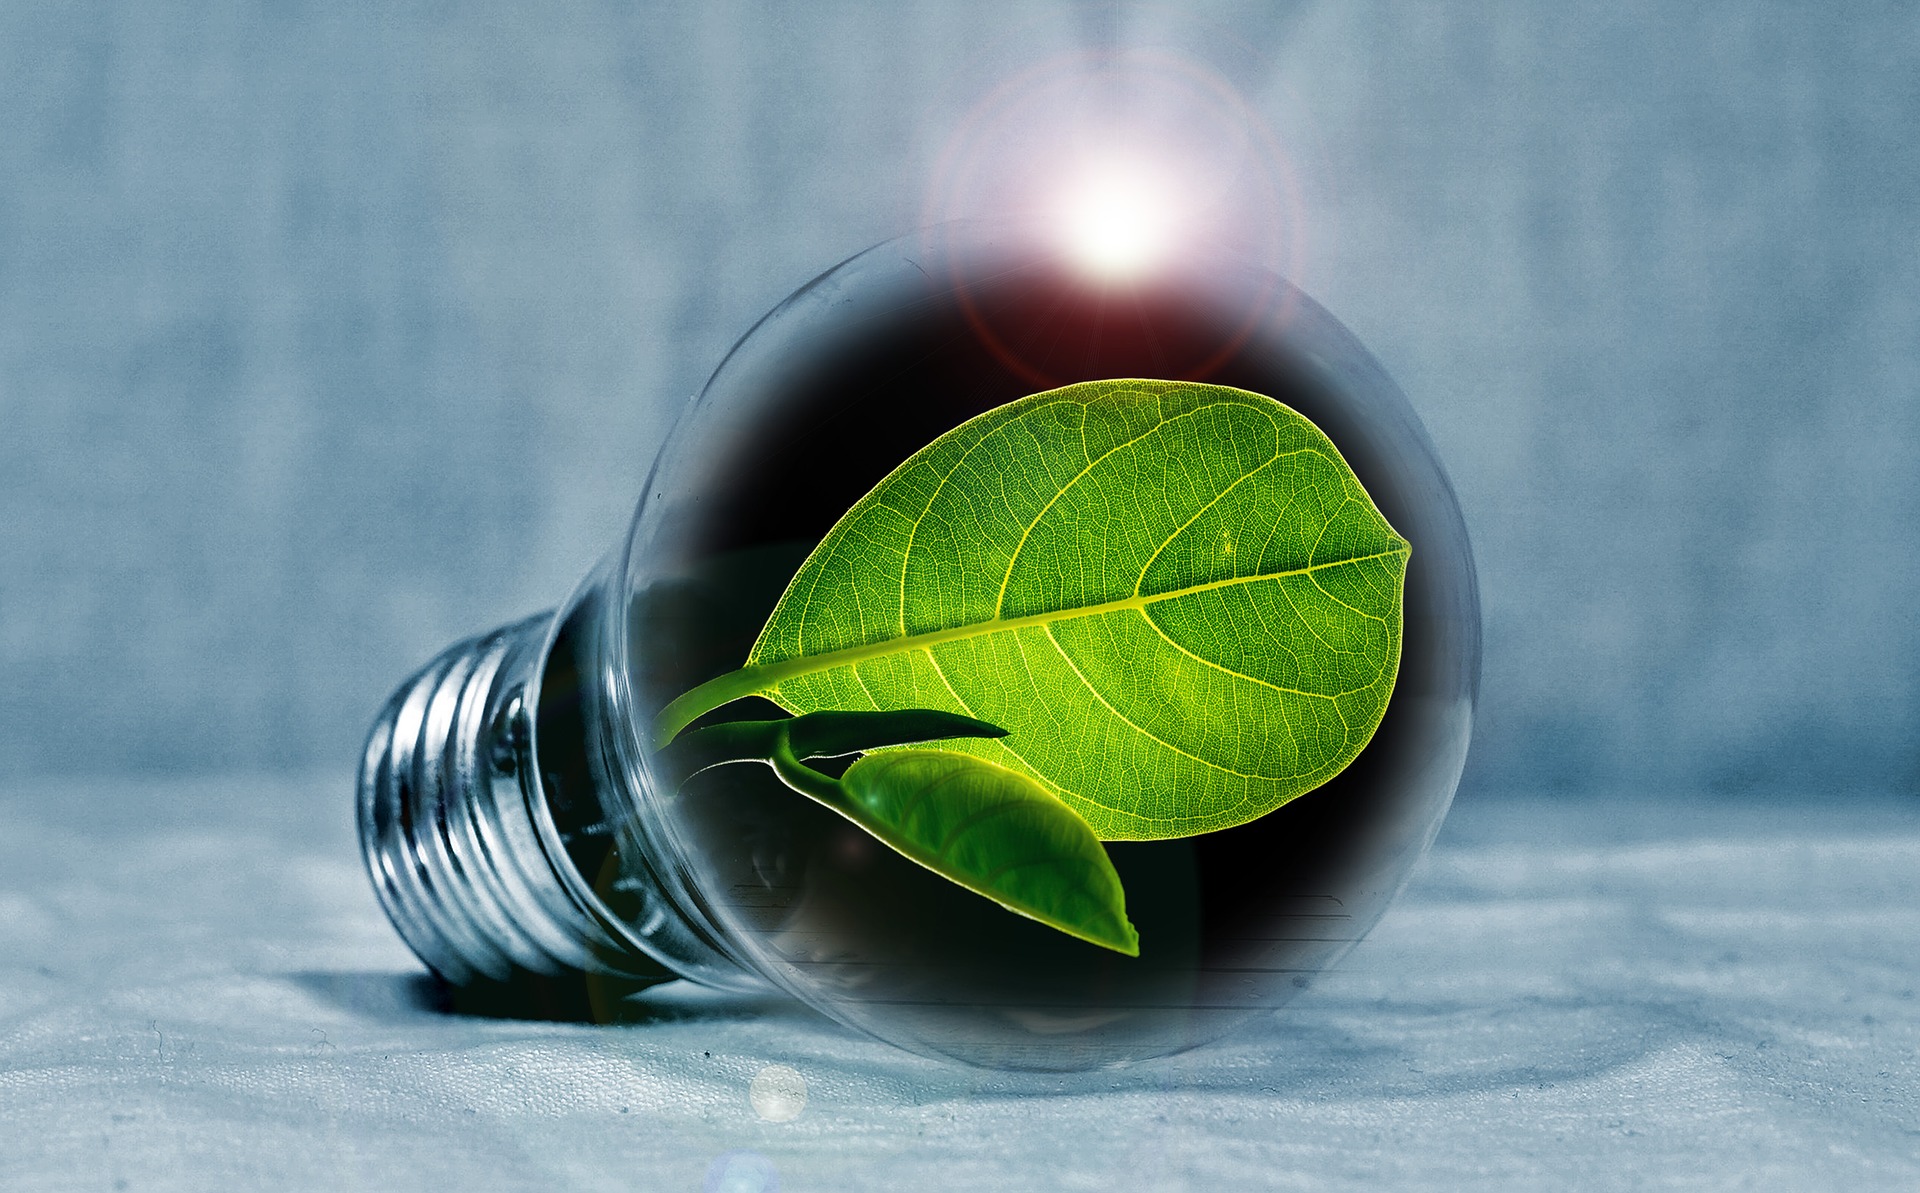 Keskkonnaühenduste energeetikavisioon: tulevikus on Eesti energeetika märksõnad hajutatus, kogukondlikkus ja säästlikkus